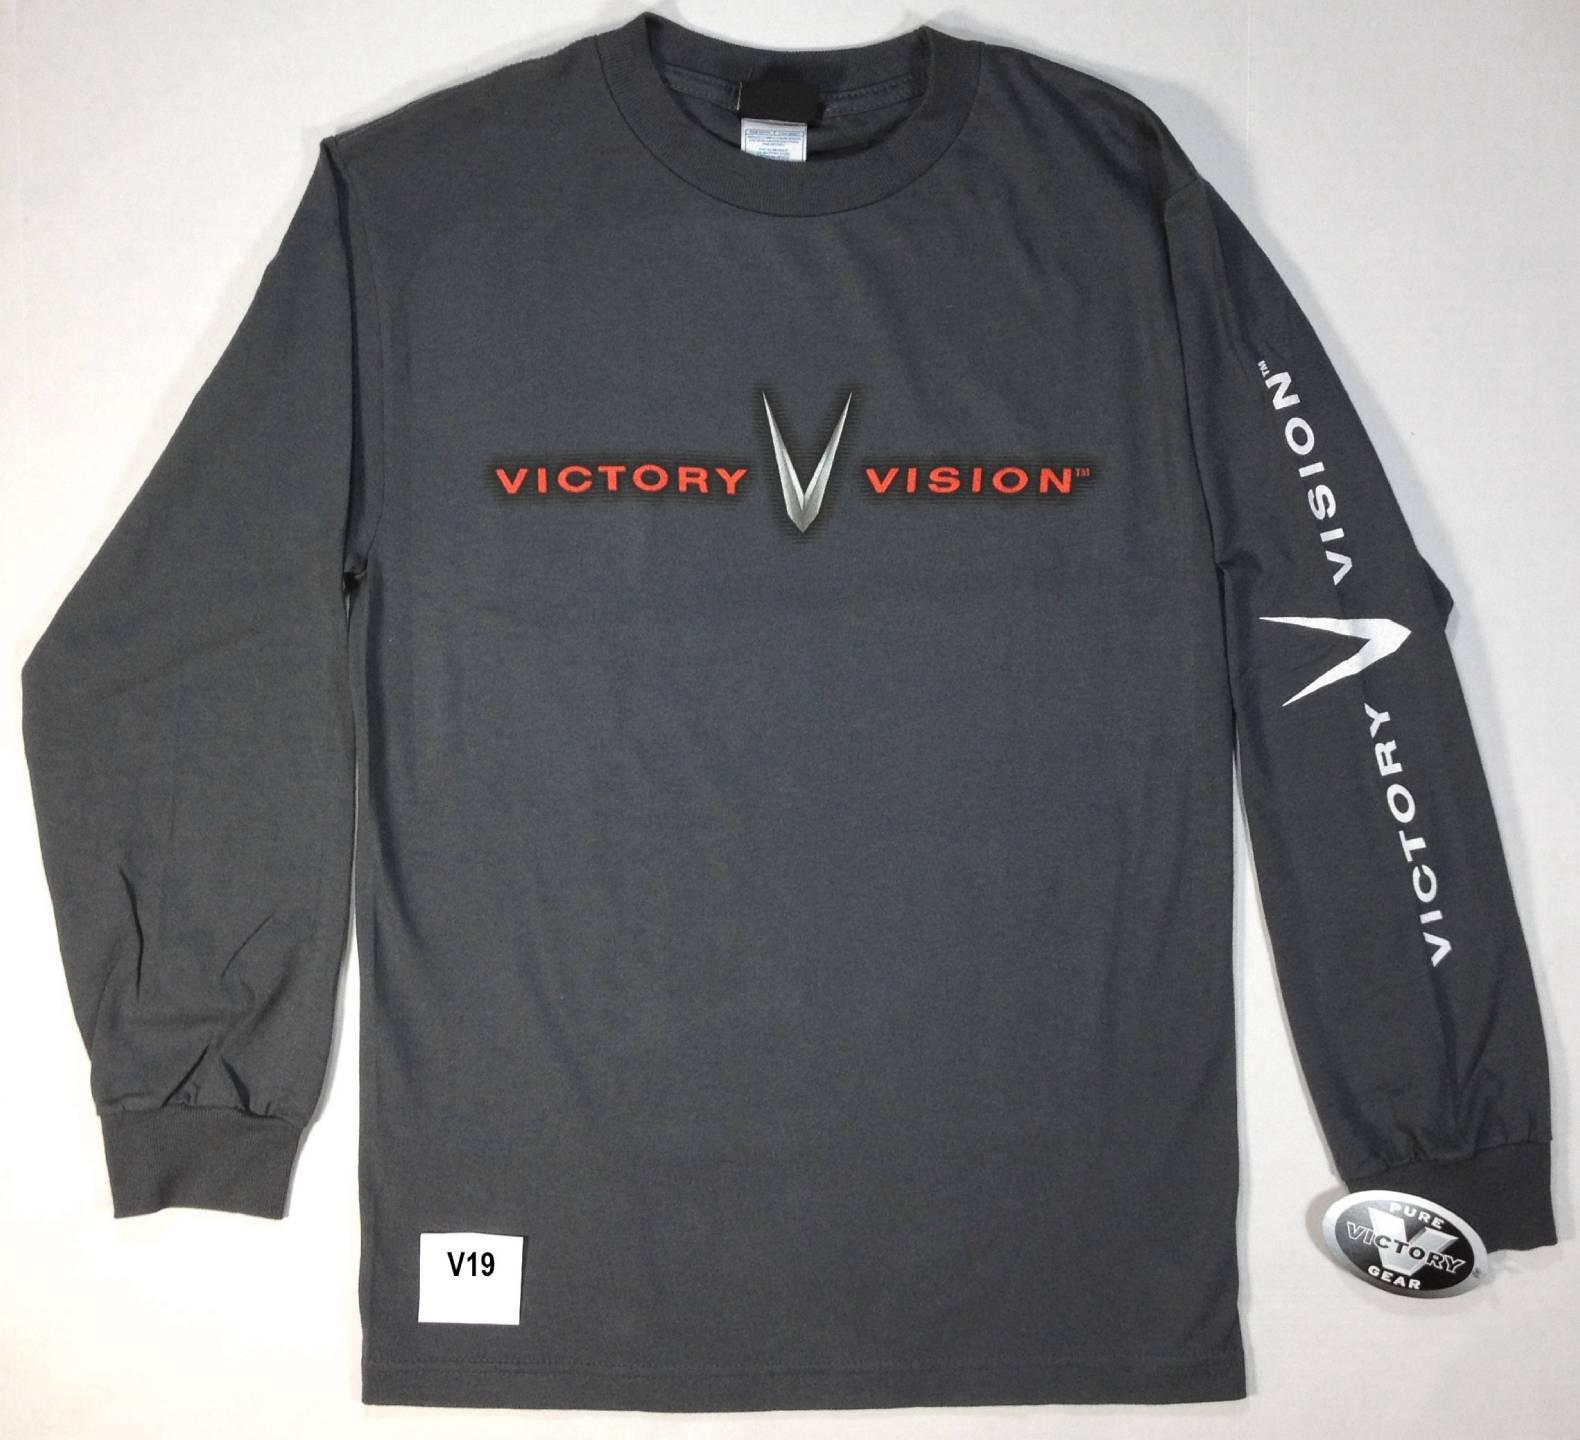 V19 - nwt victoy motorcycle gray l/s mens t shirt "victory vision" small medium